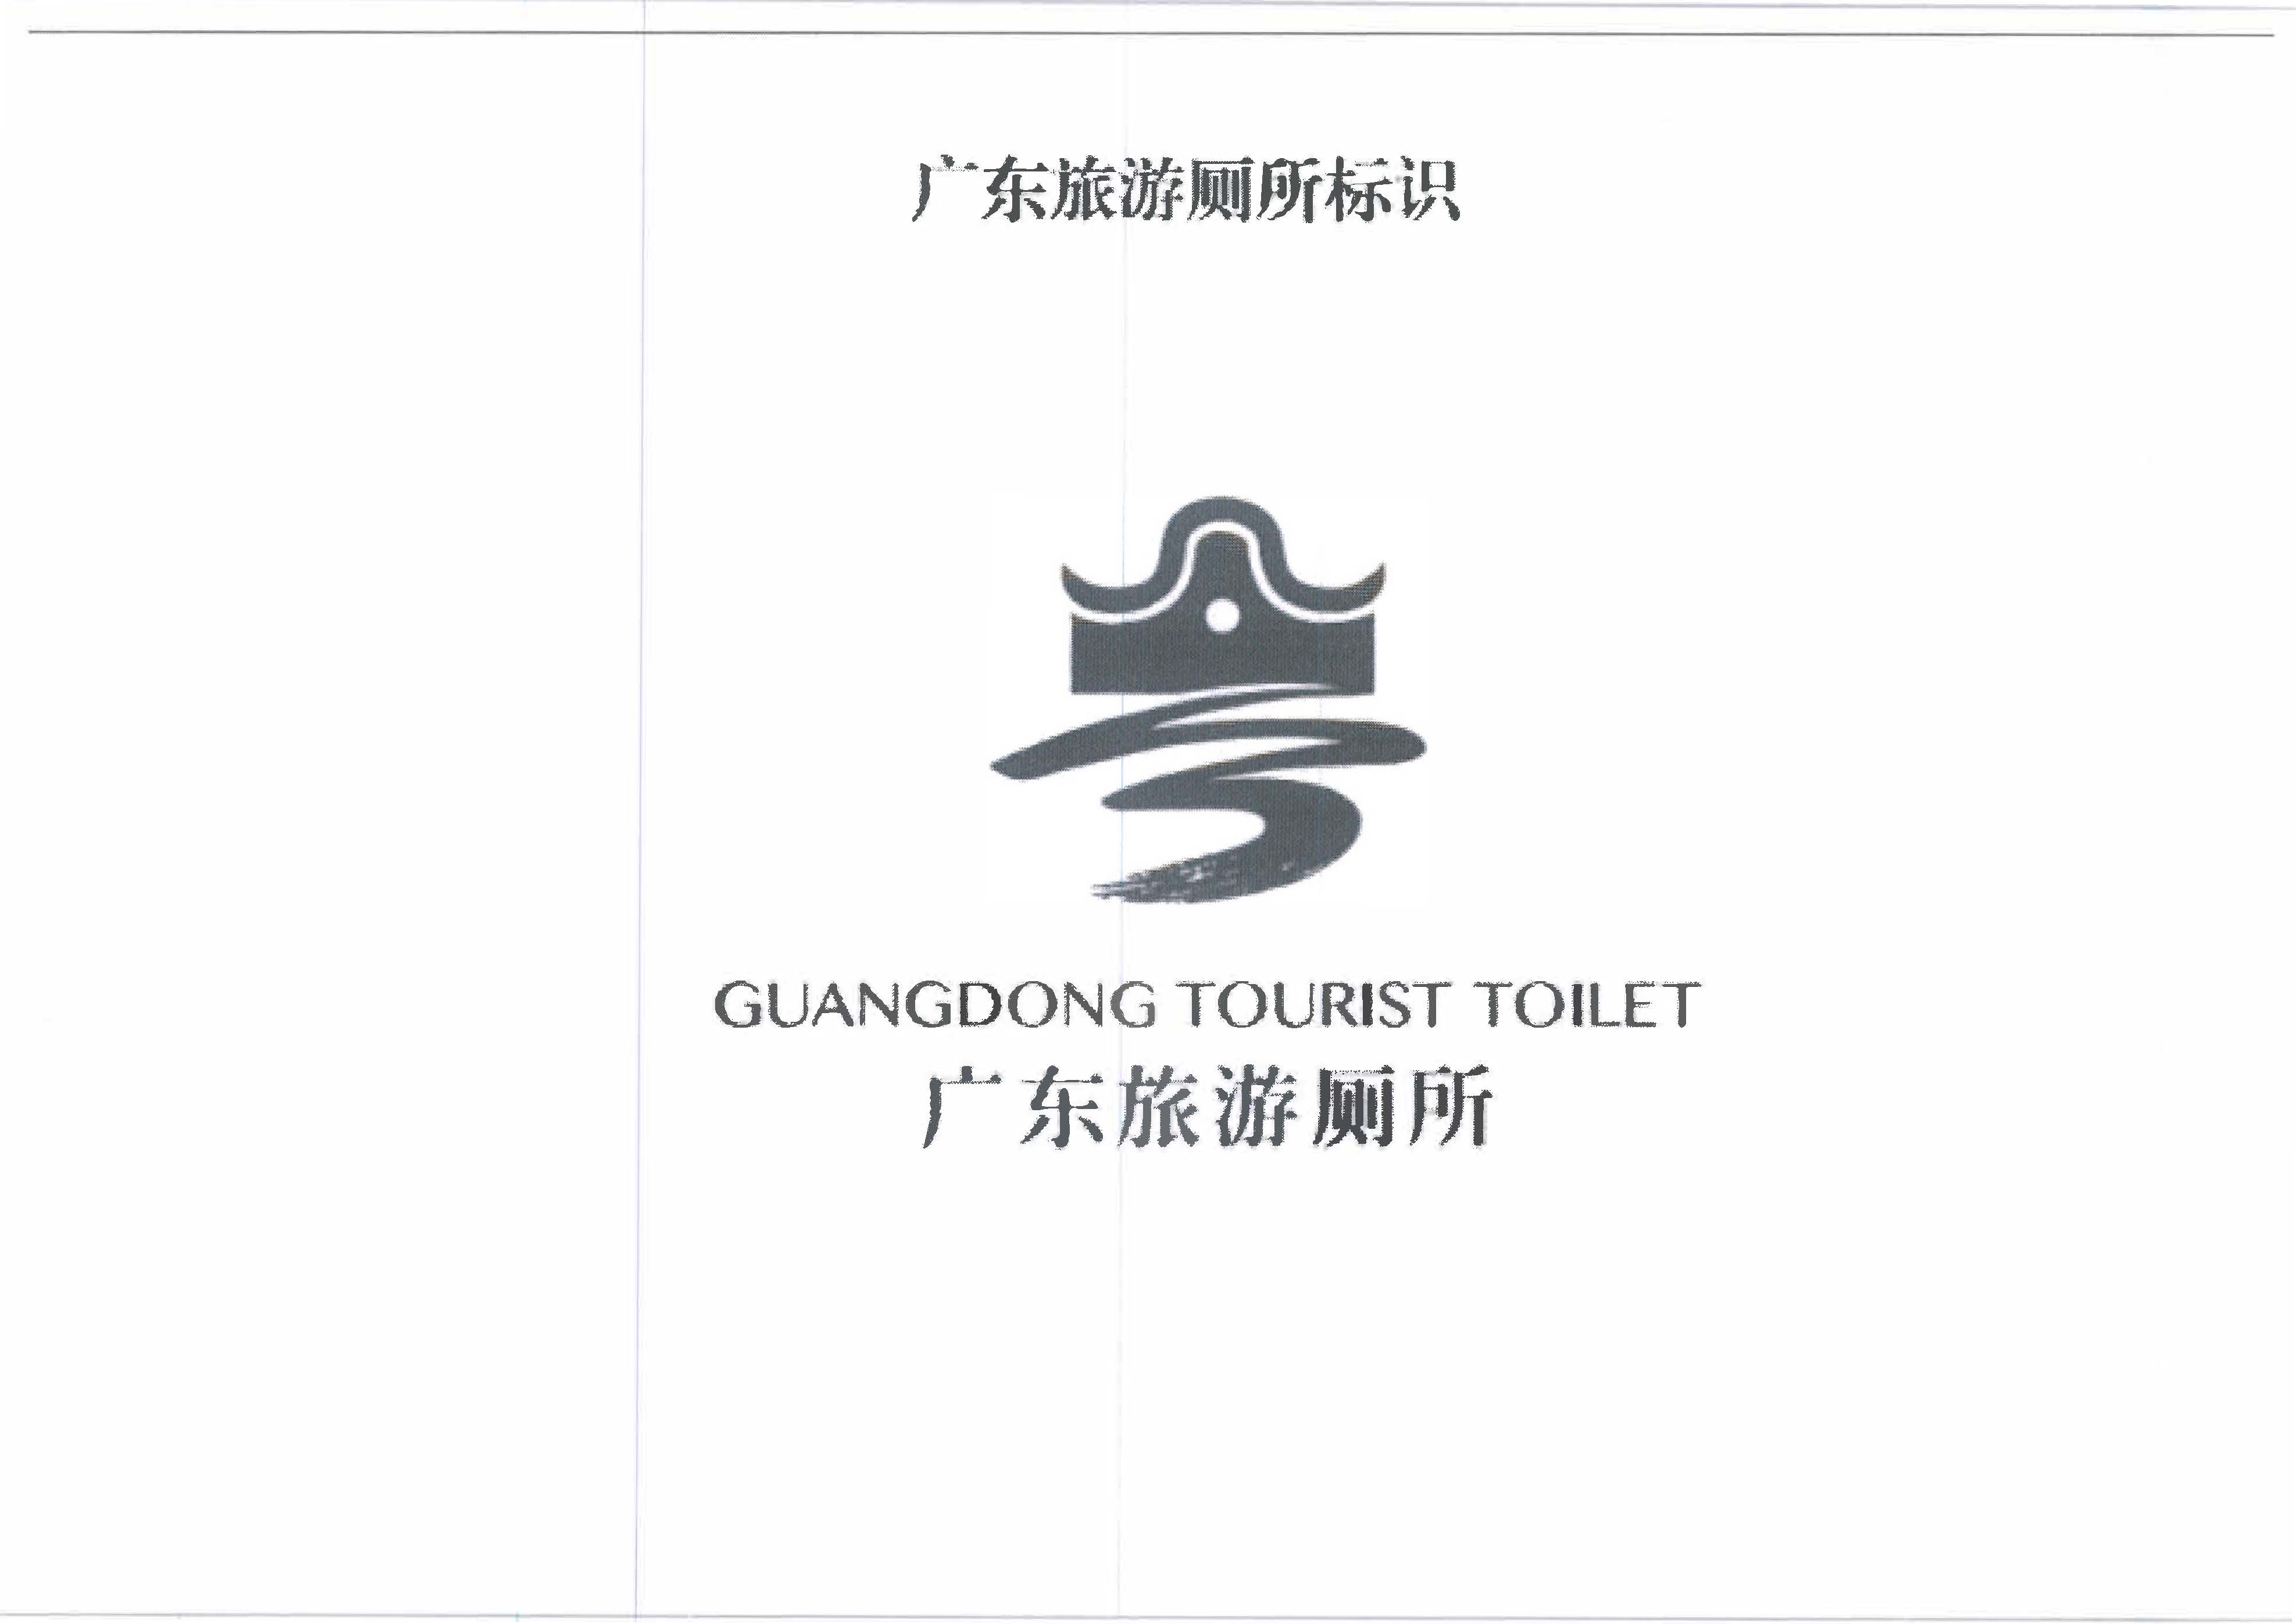 230426165324104180_关于印发《广东省旅游厕所质量提升工程（2023-2025年）三年行动计划》的通知 _页面_09.jpg